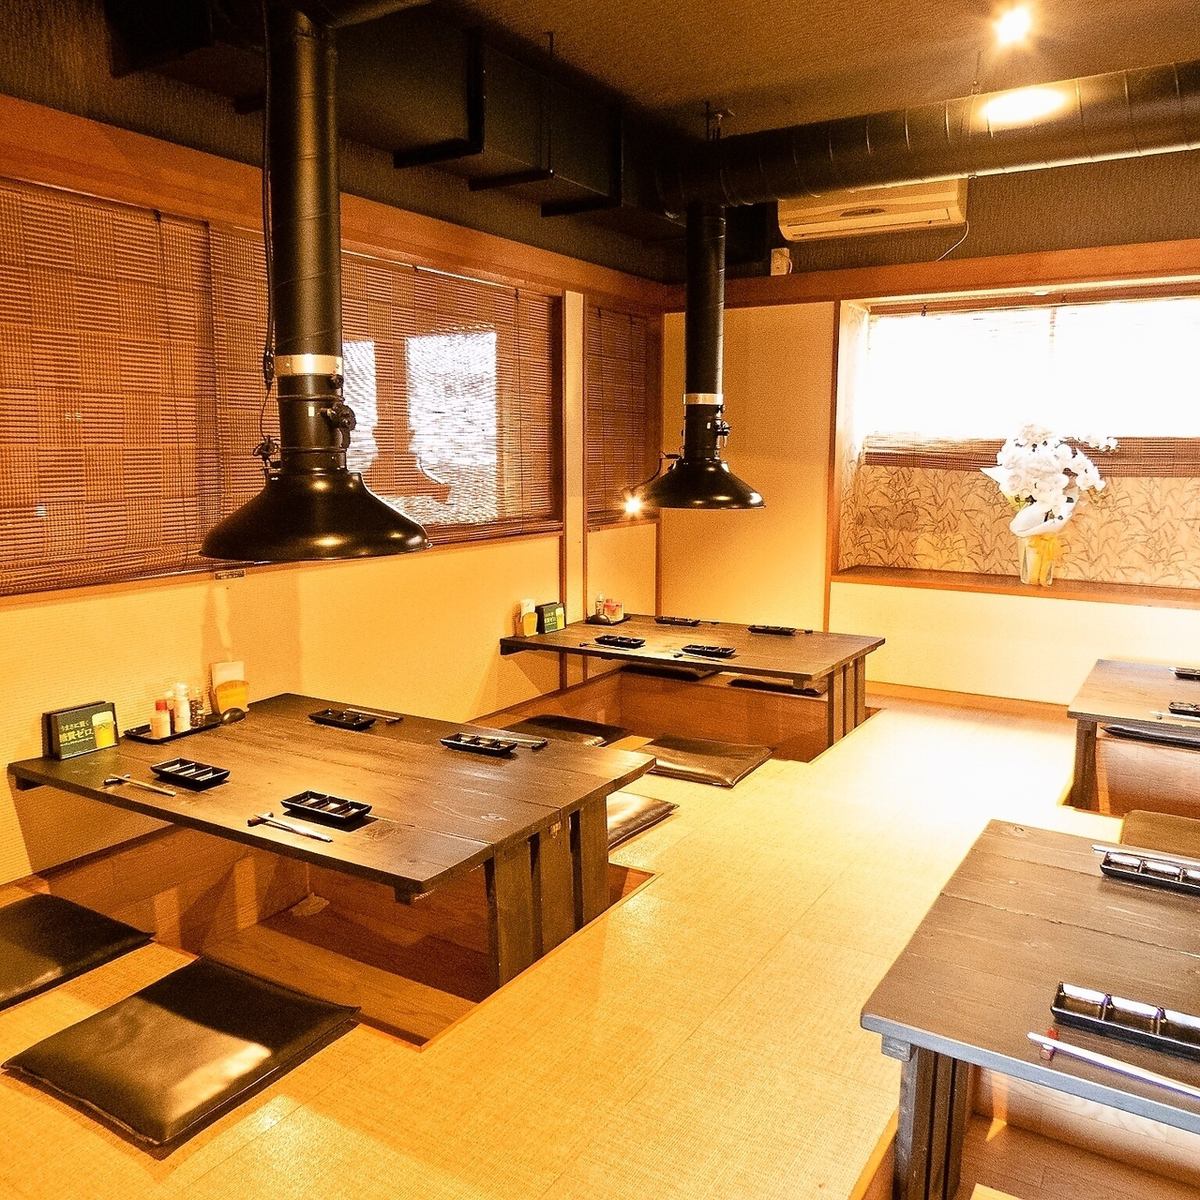 完整的私人房间。日式房间可供10至16人预订。